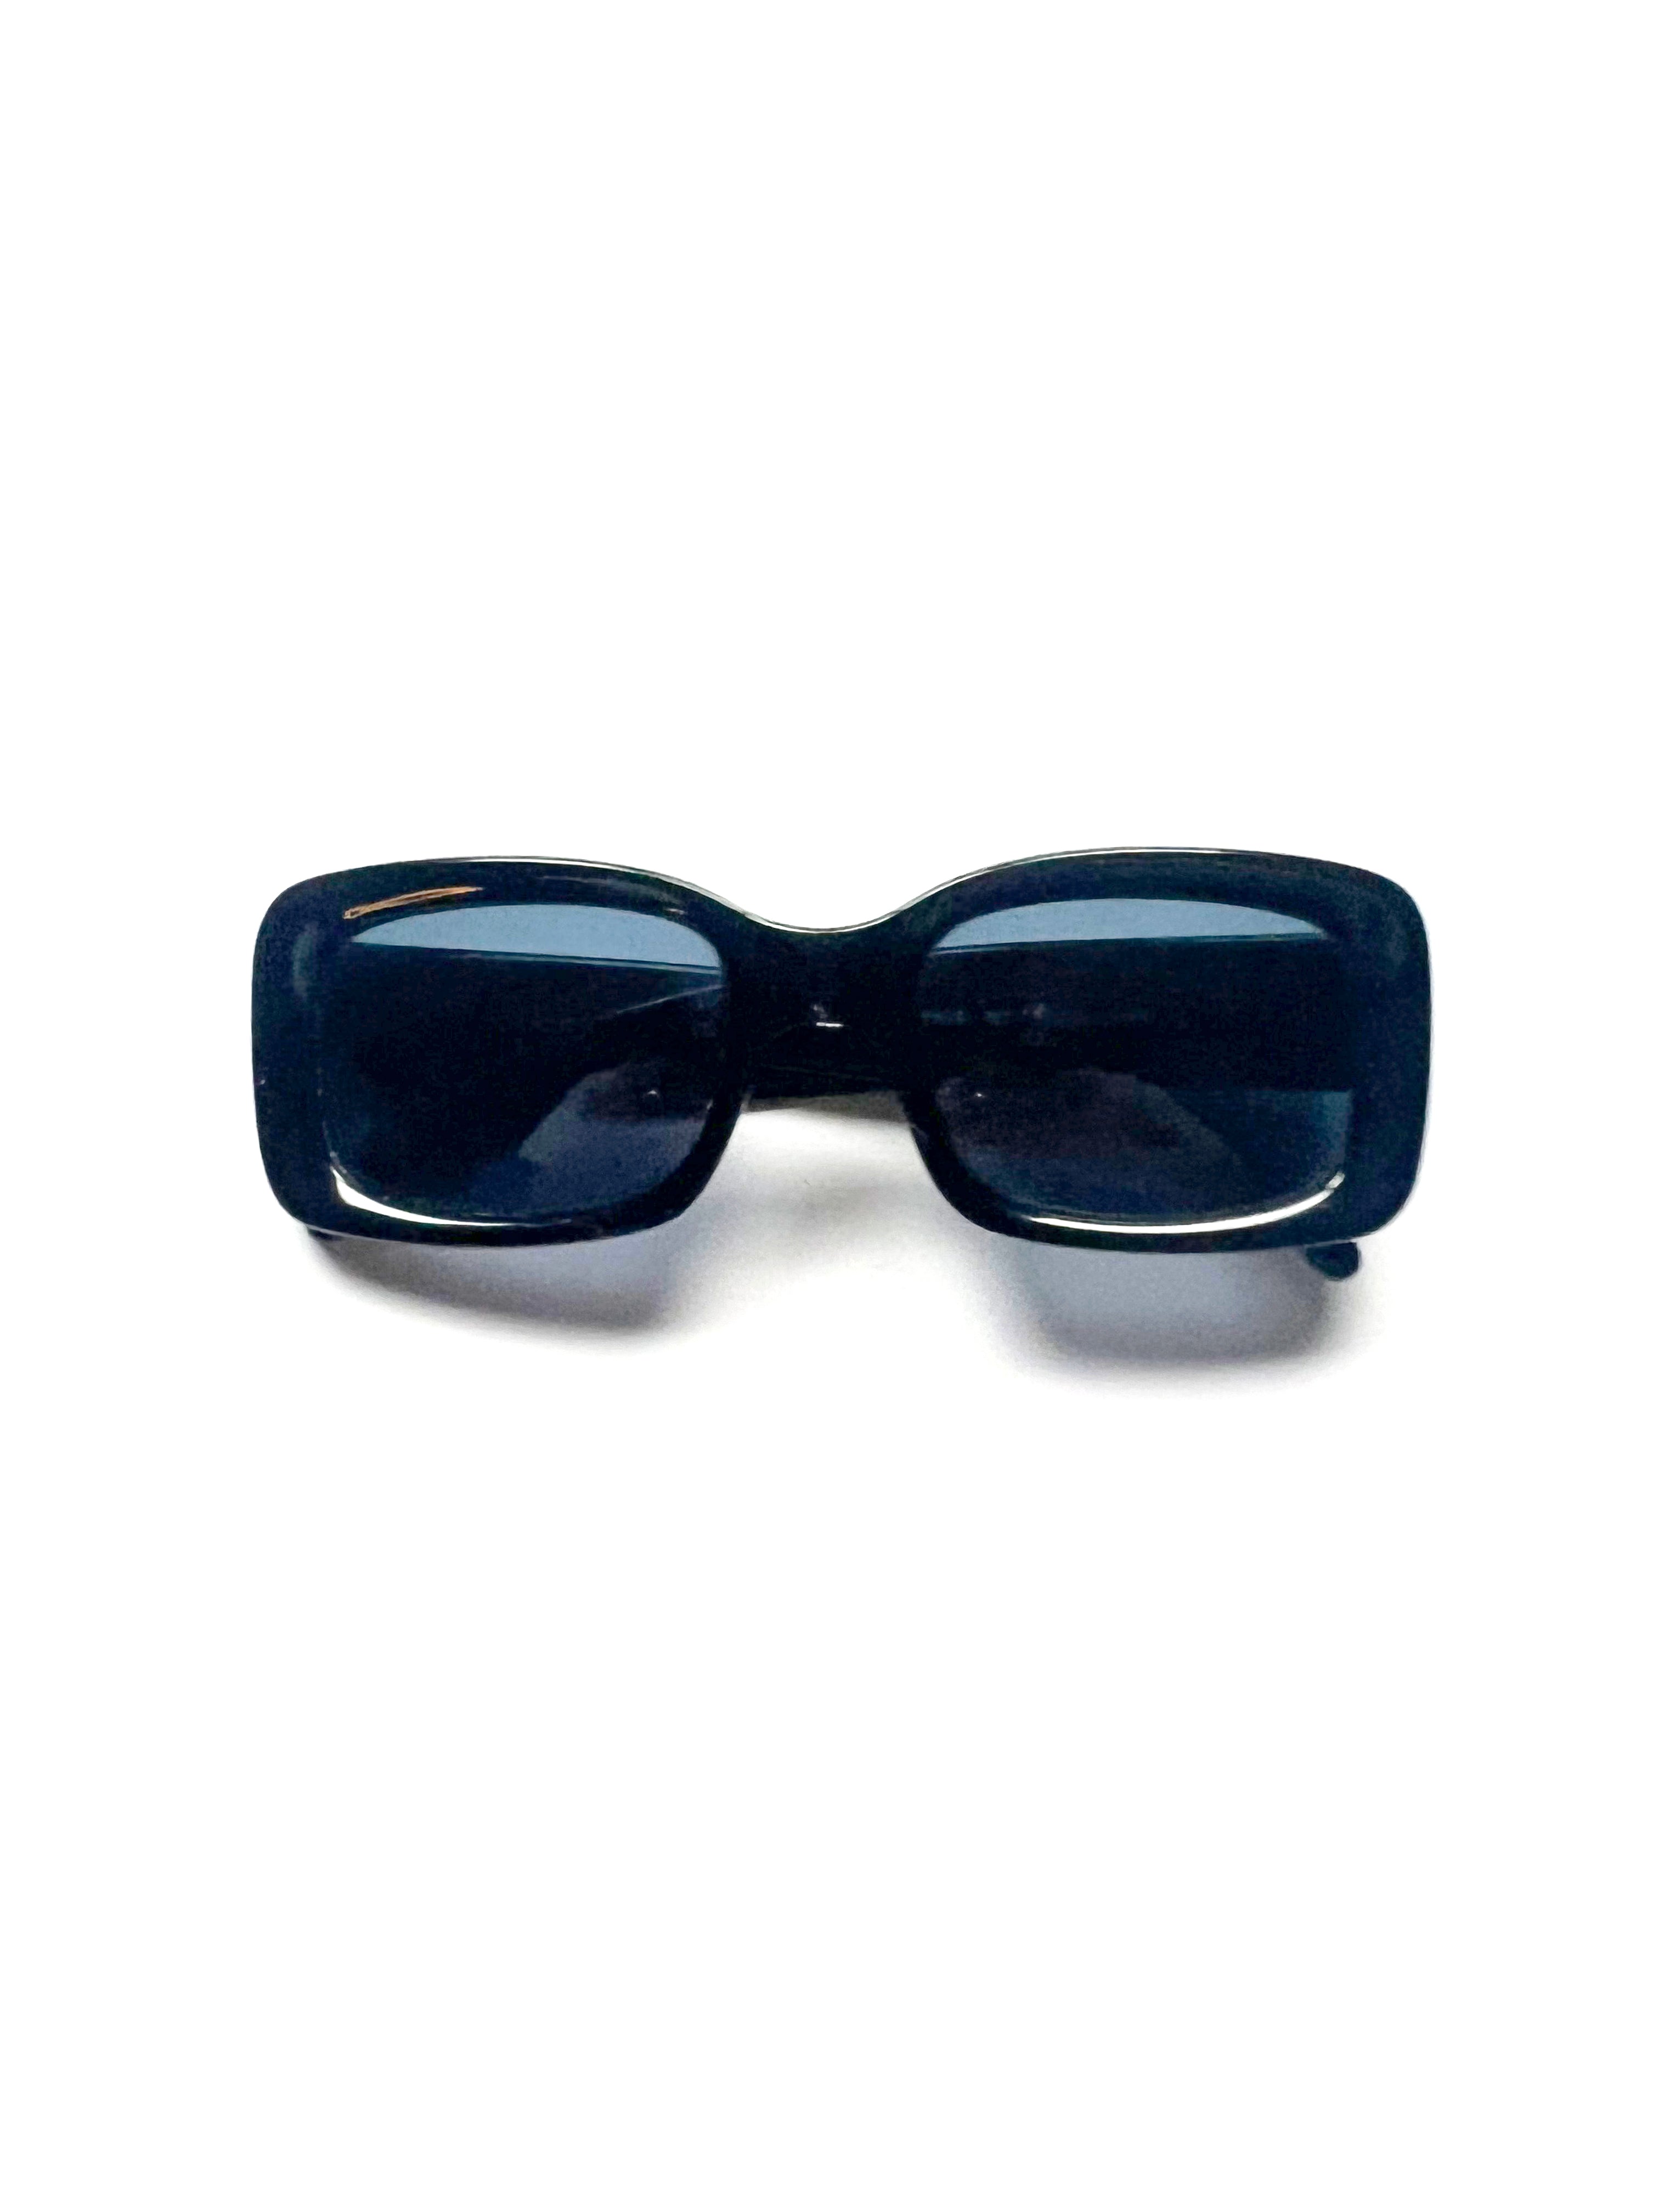 Gucci Sunglasses 90's